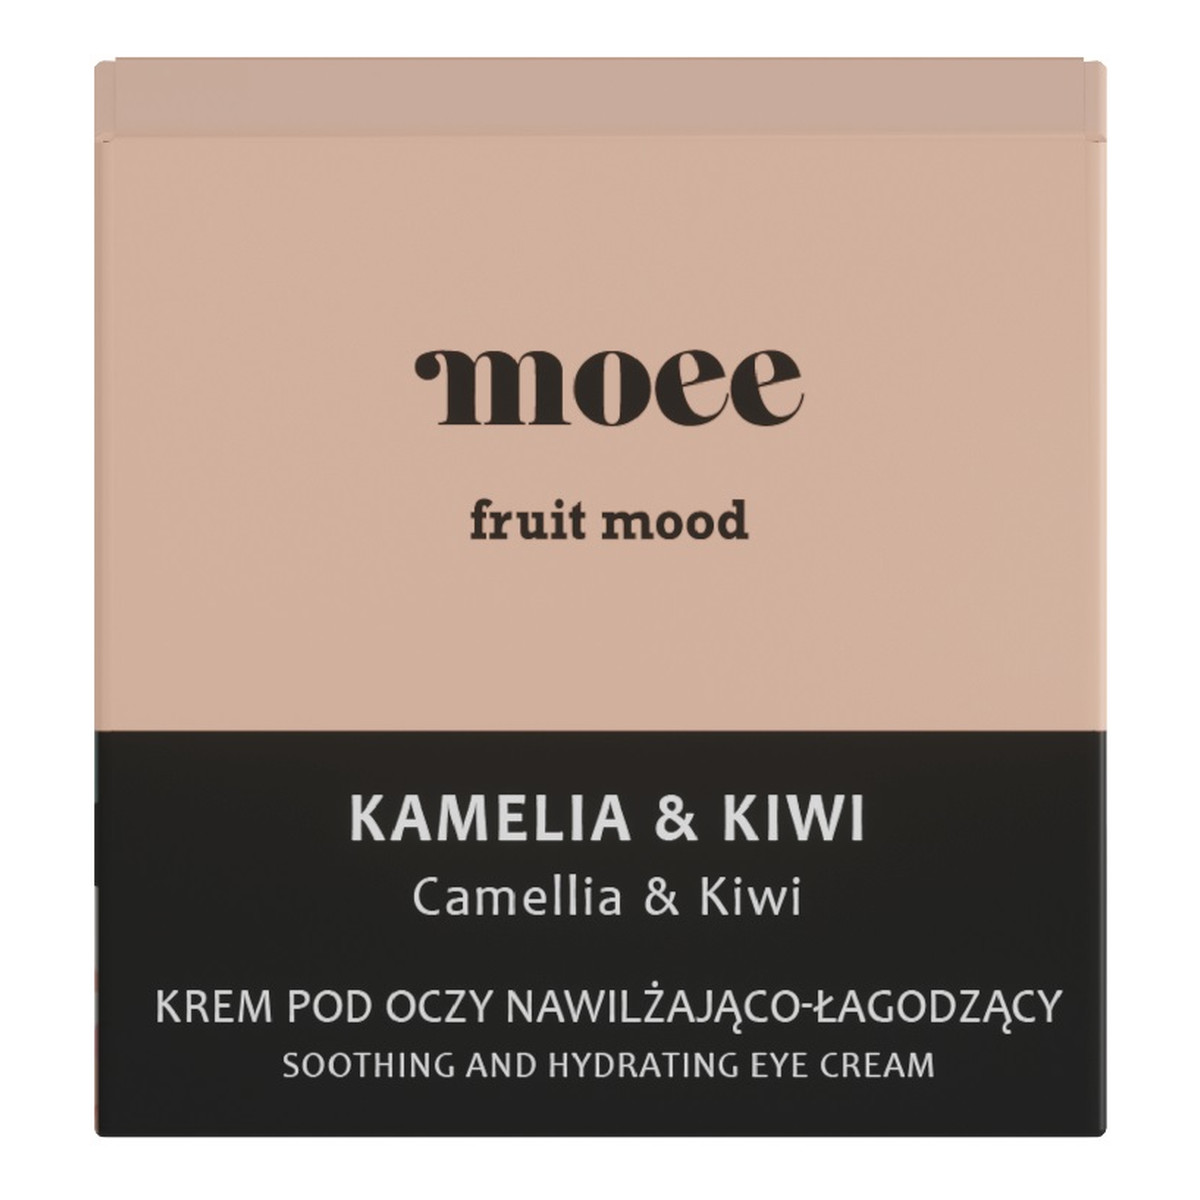 Moee Fruit Mood nawilżająco-łagodzący Krem pod oczy kamelia & kiwi 30ml